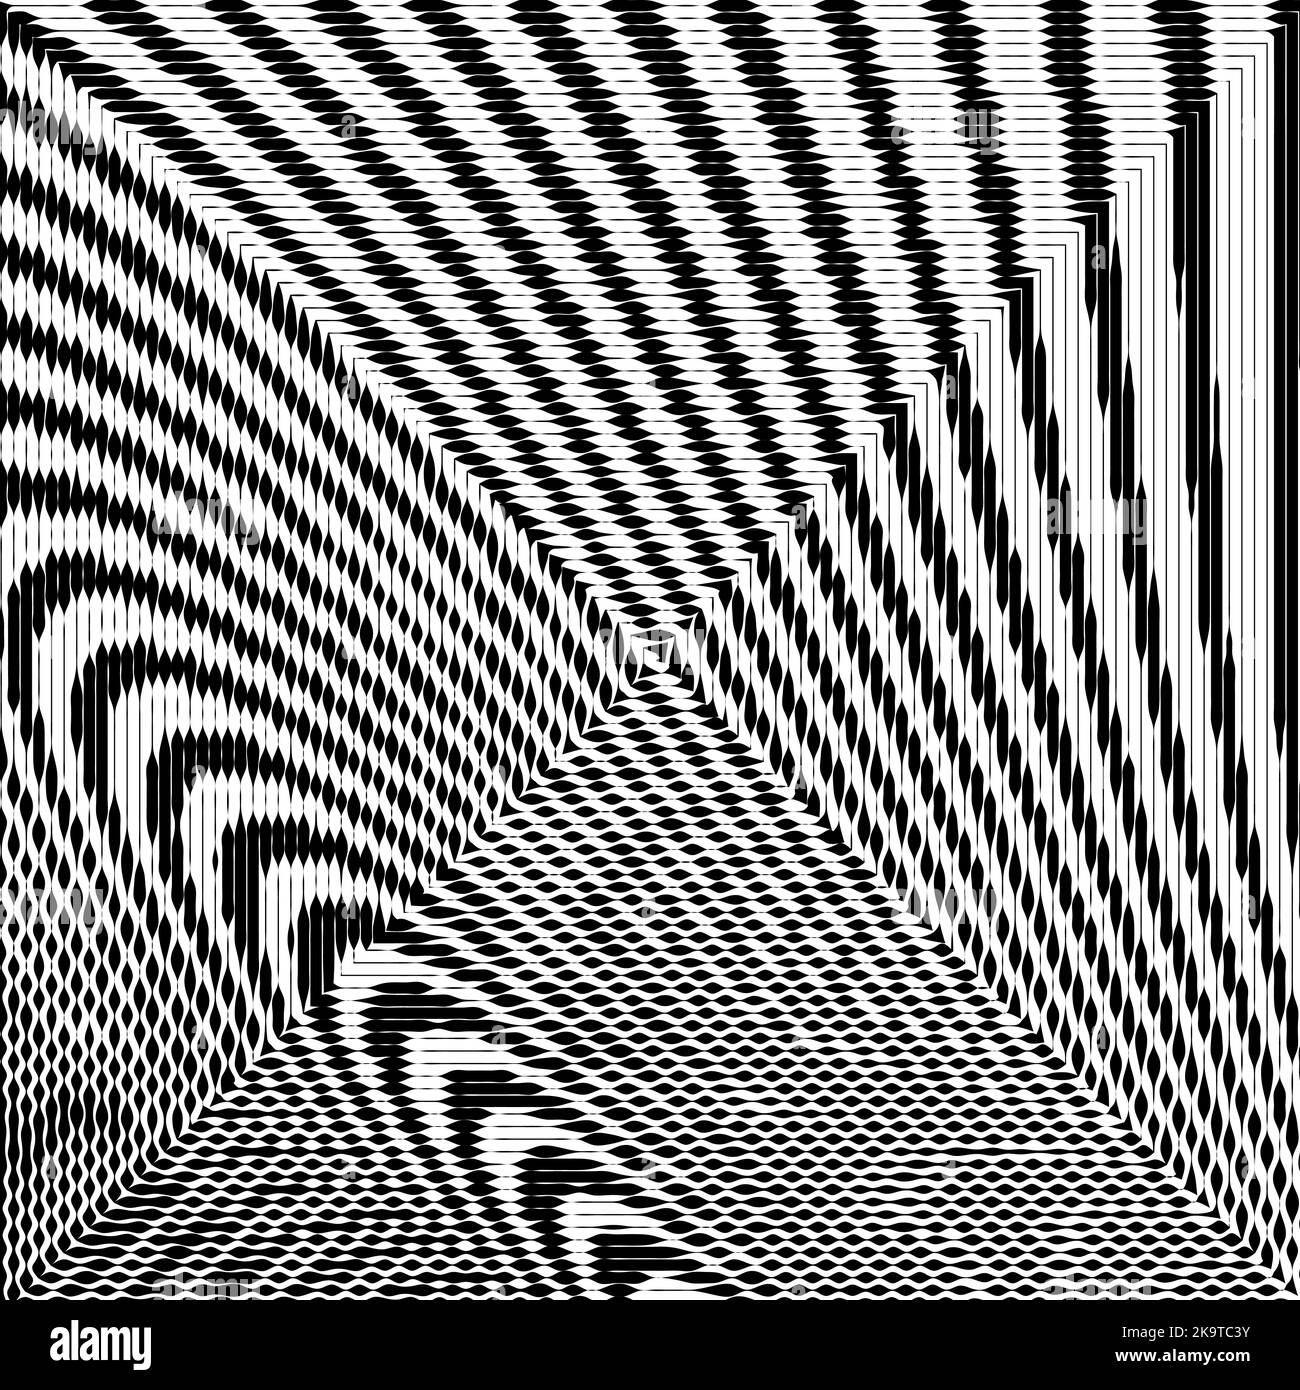 Abstrakter Hintergrund mit schwarzen und weißen Streifen, Vektor-Design-Element. Stock Vektor